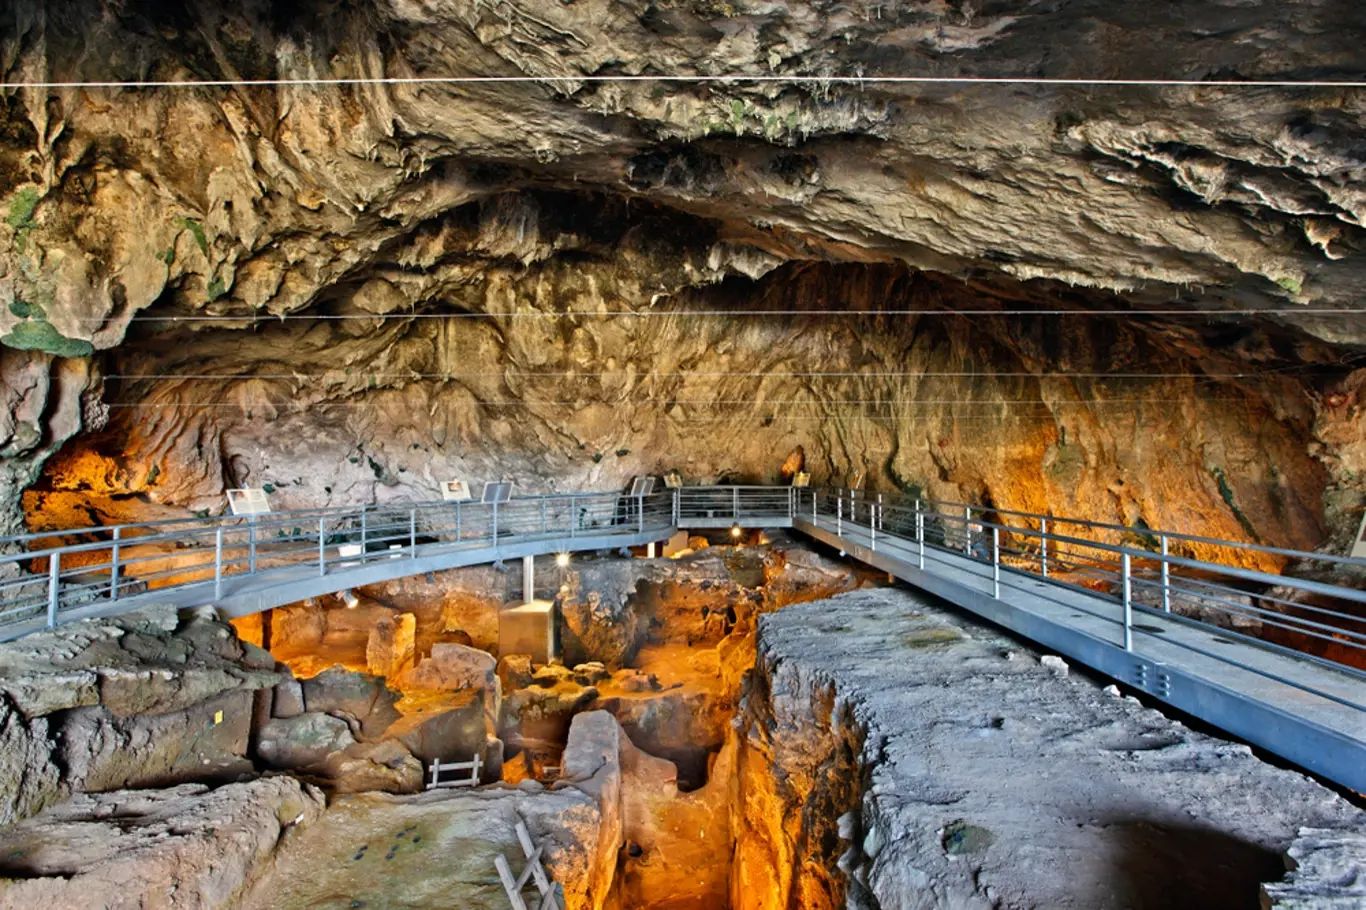 Jeskyně Theopetra v Řecku, kde byla nalezena kostra mladé dívky